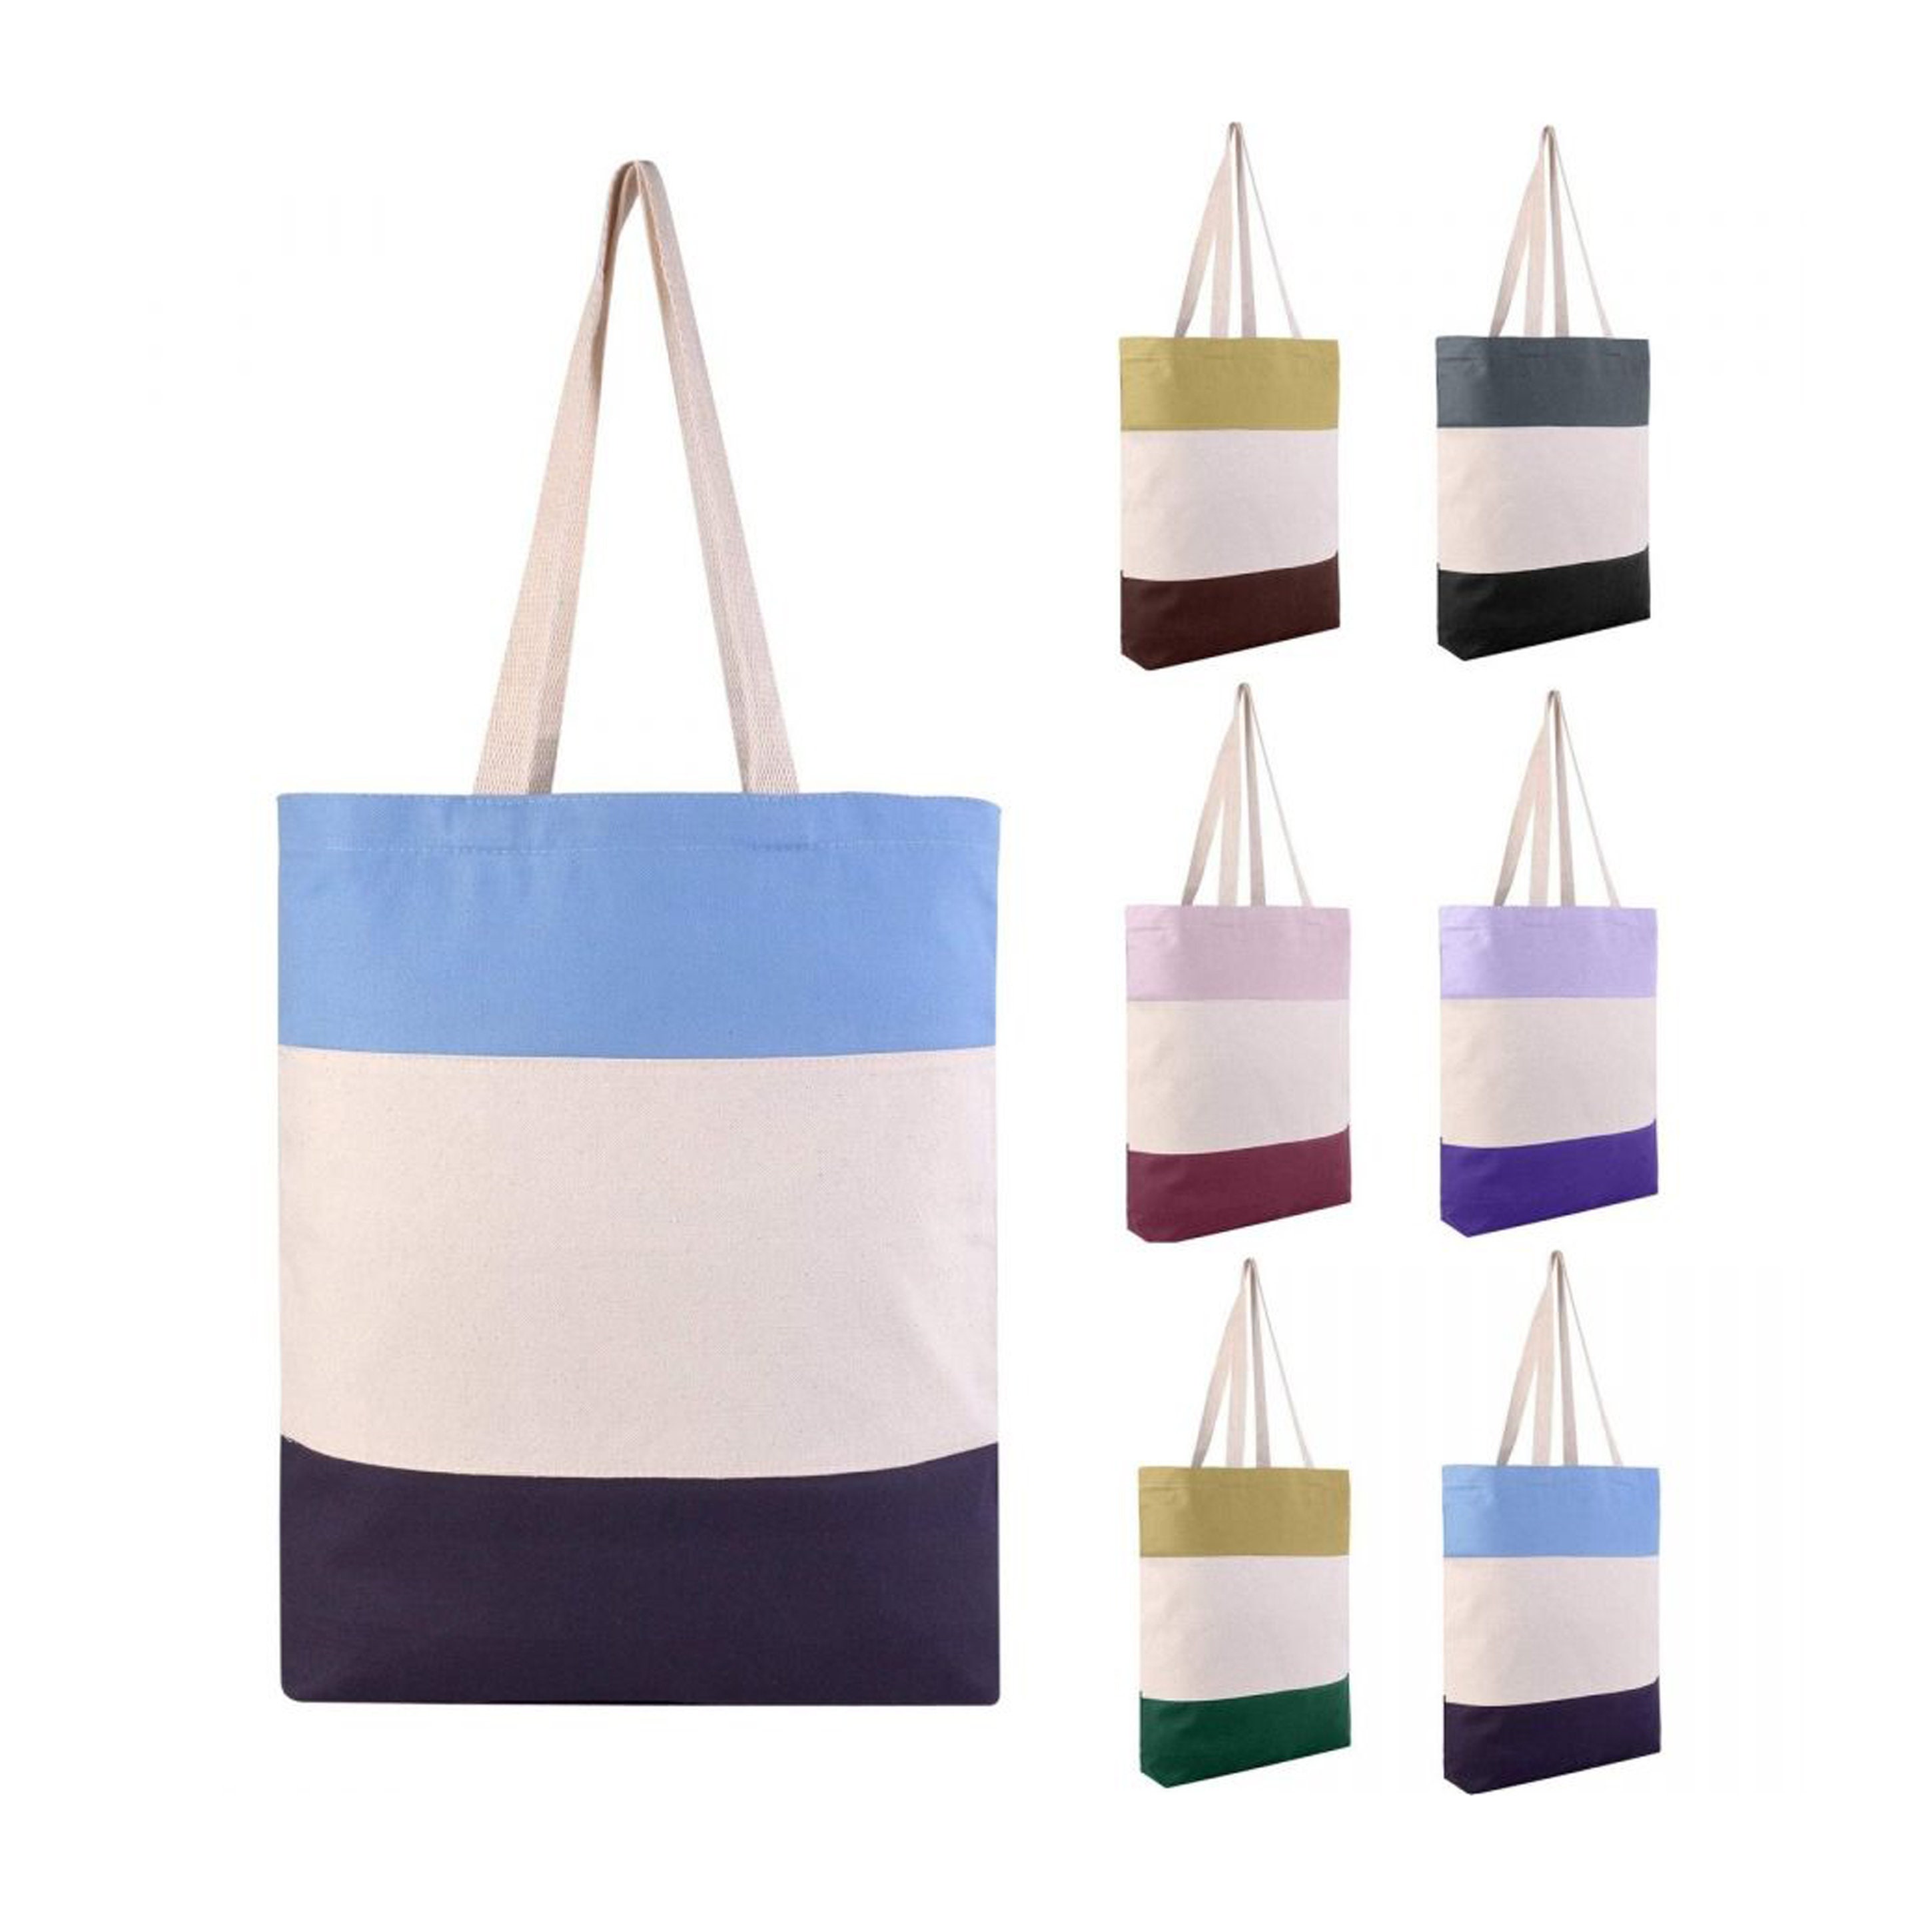 Tote Bag Economical Canvas Colors, 100% cotton,12 Each - Lime Green